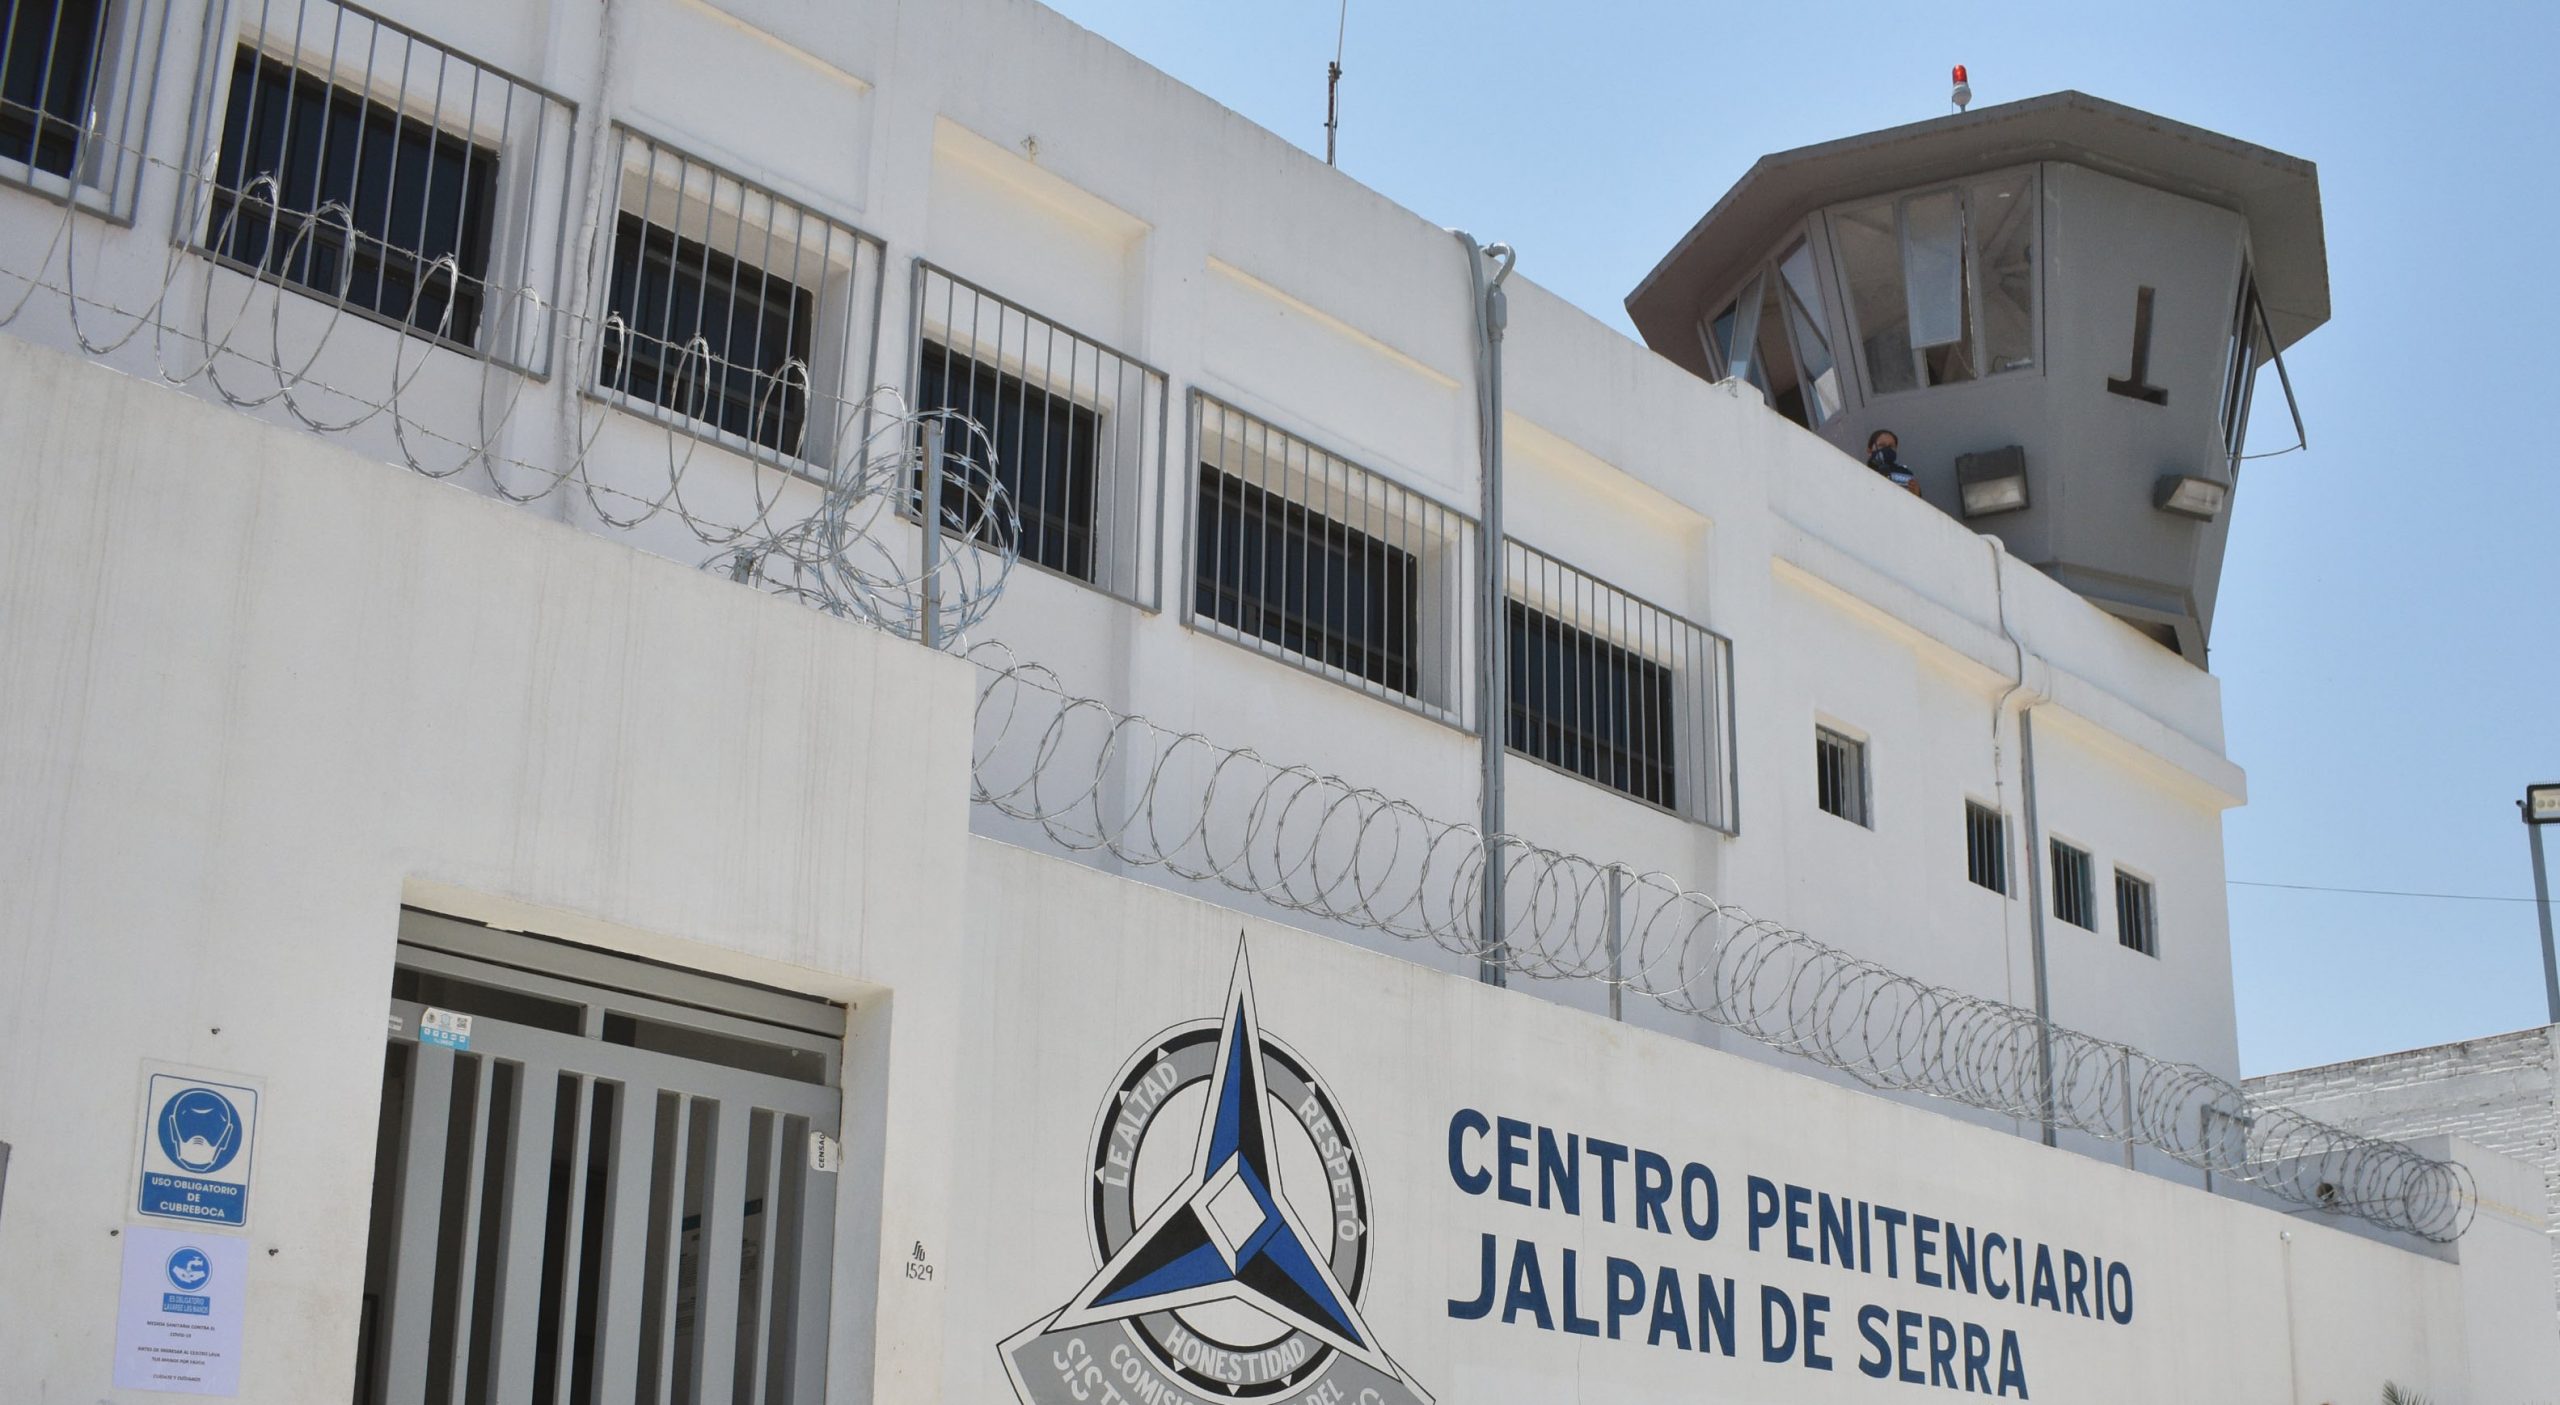 El alcalde está en el Centro Penitenciario de Jalpan de Serra